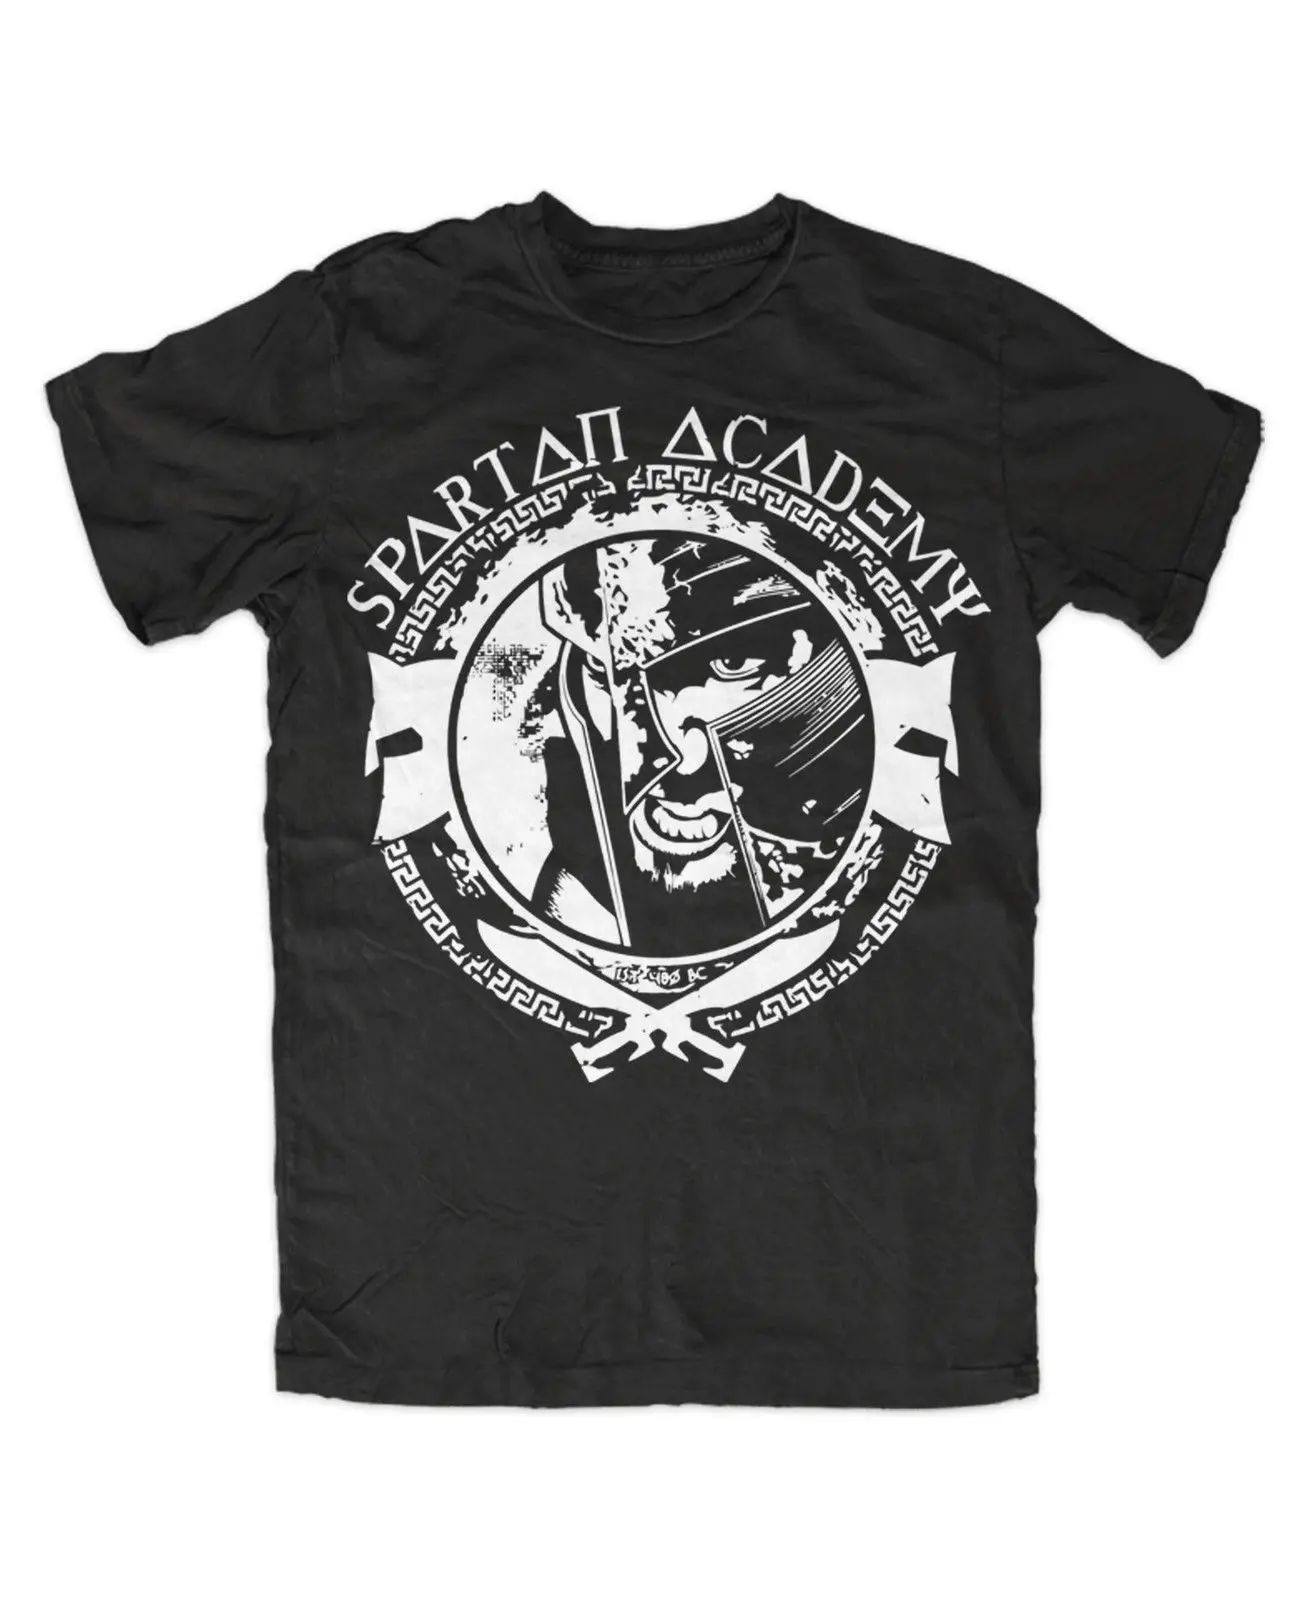 Spartan Academy Premium t shirt Спарта 300 фаланкс бой дешевые оптовые футболки 100% хлопок